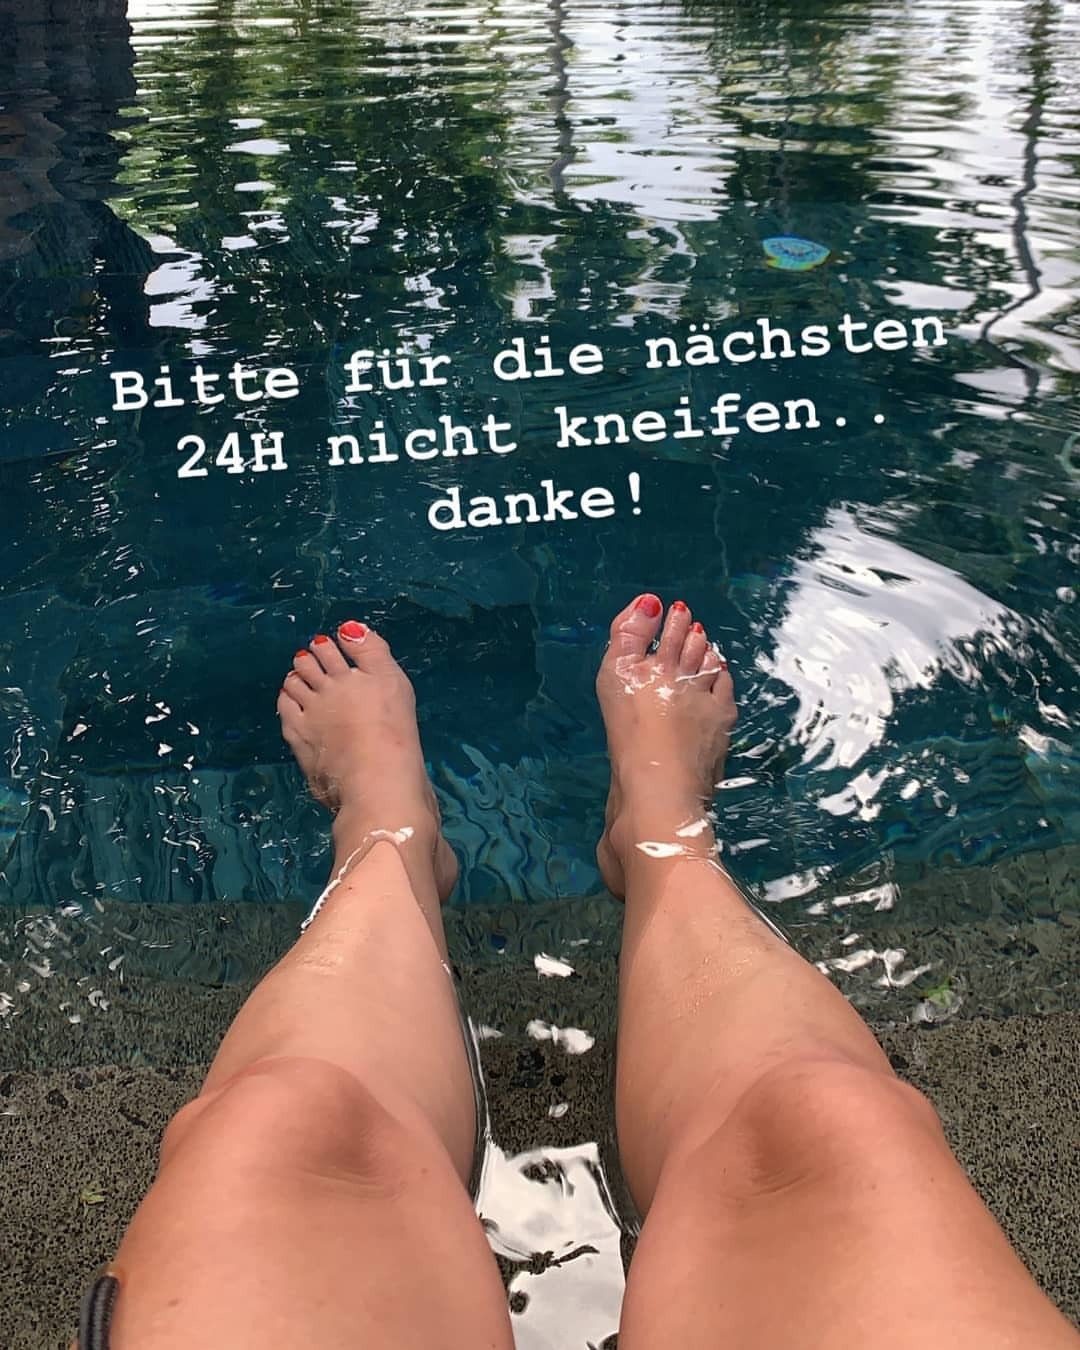 Nova Meierhenrich Prettyfeet Feet Toes